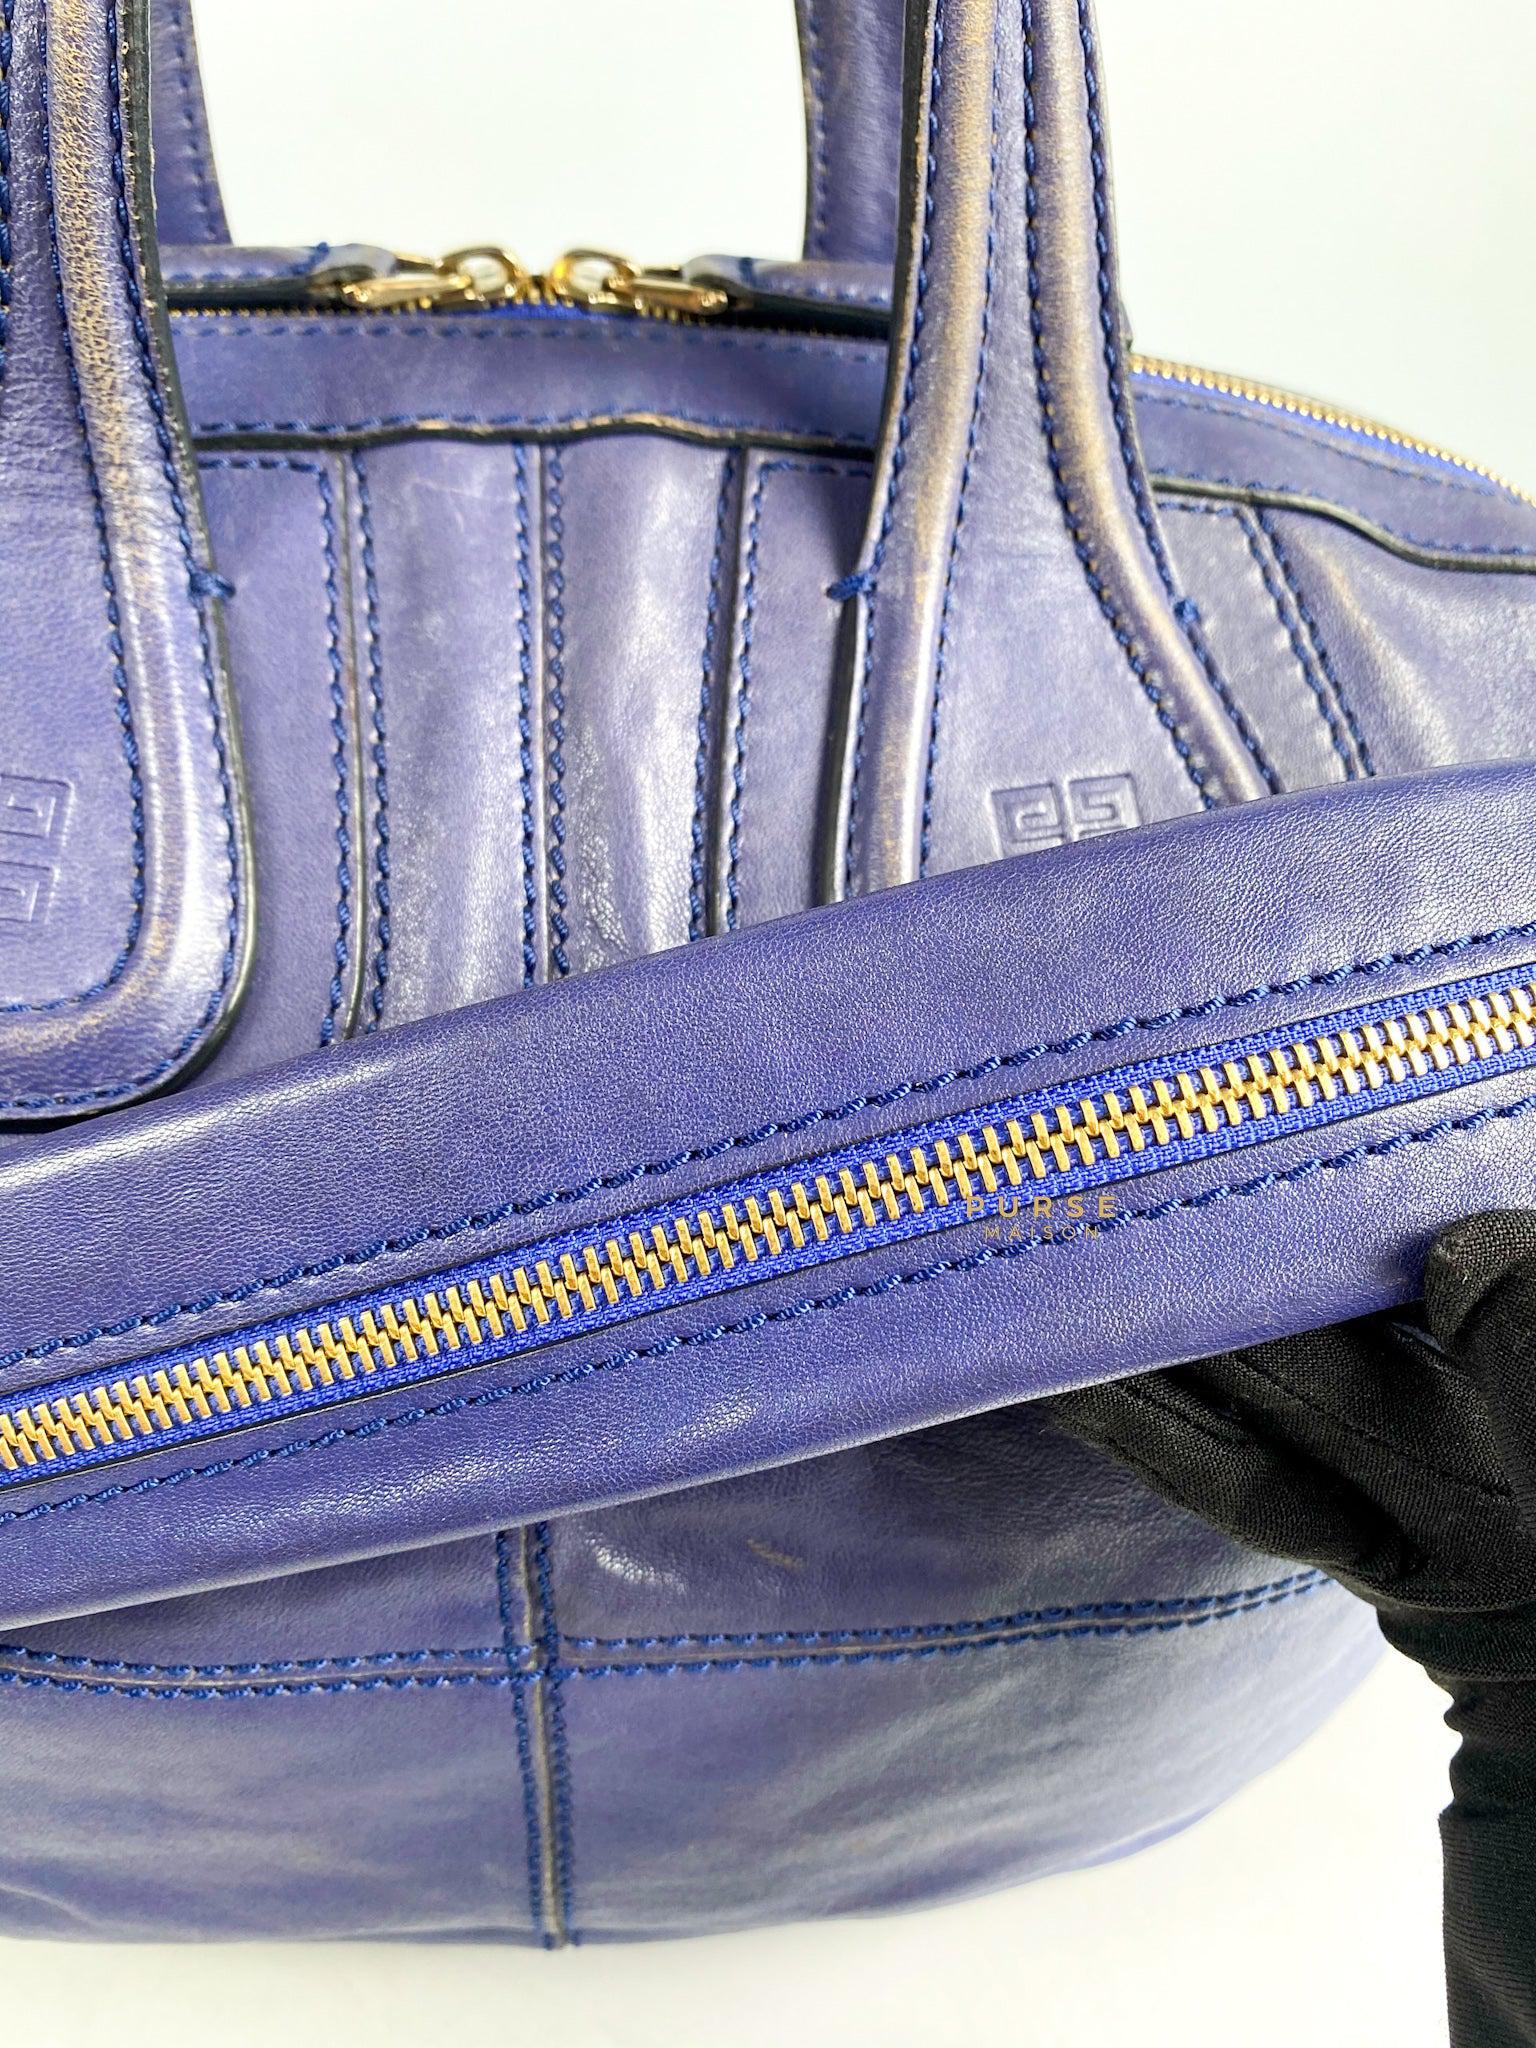 Givenchy Nightingale Blue Medium Lambskin Bag